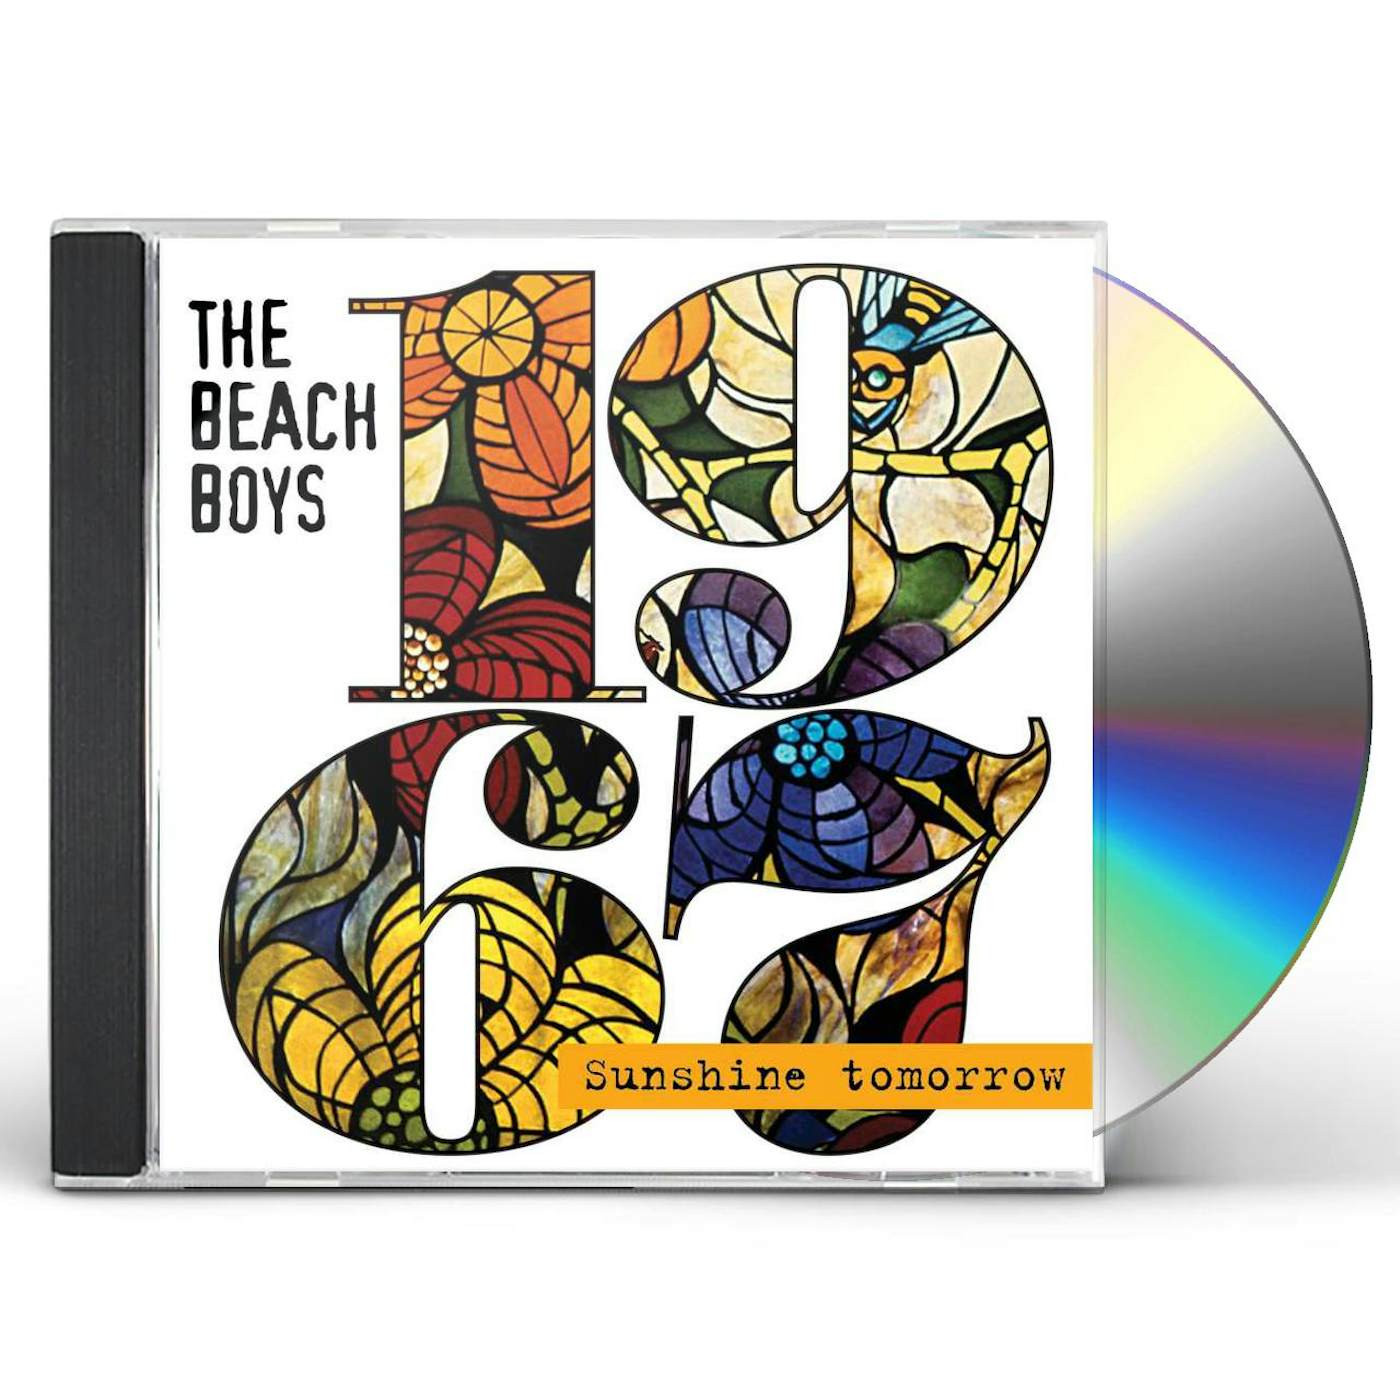 The Beach Boys 1967 - SUNSHINE TOMORROW CD